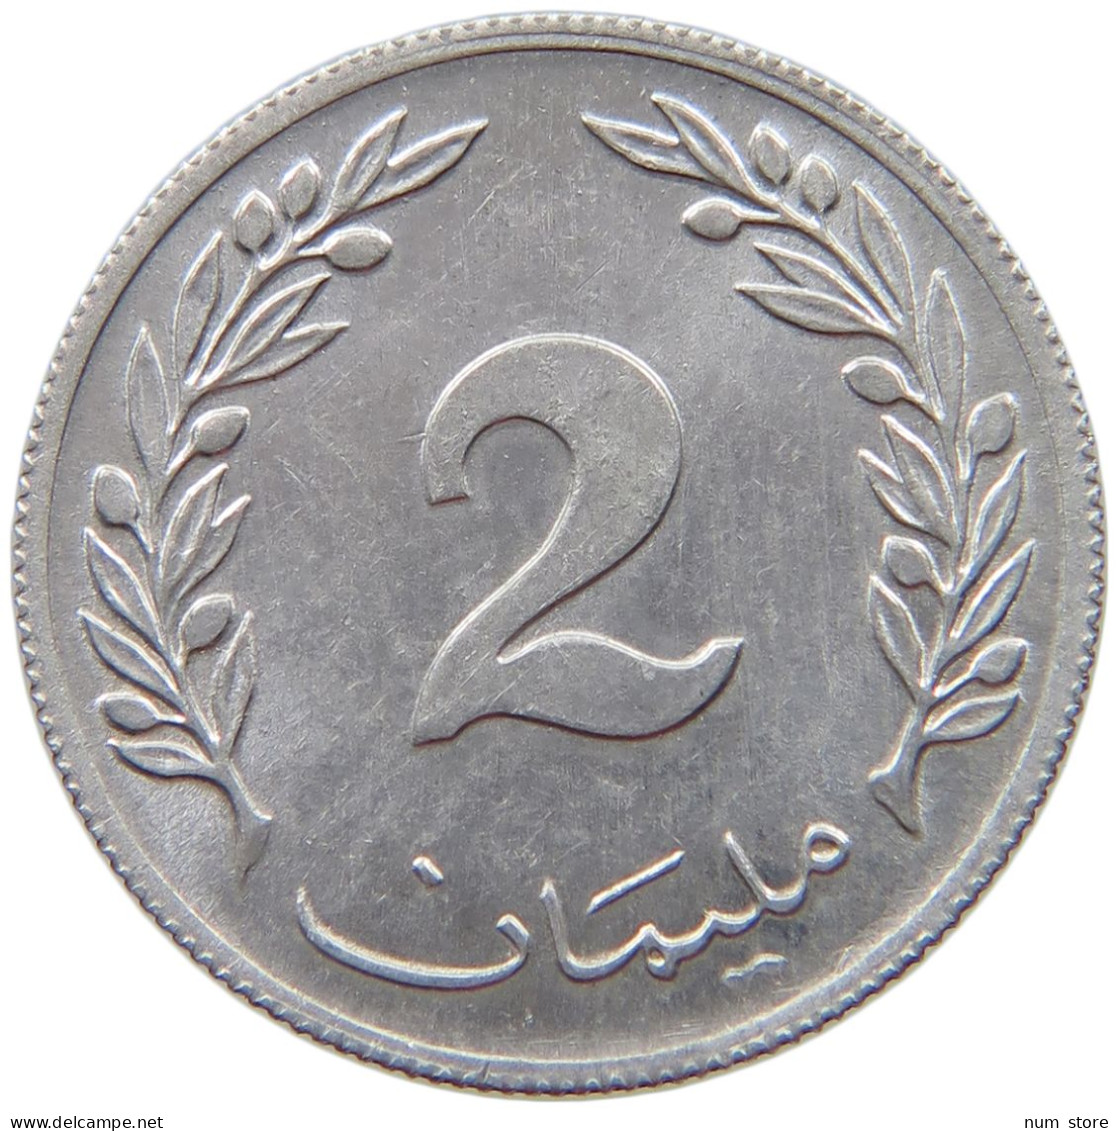 TUNISIA 2 MILLIEMES 1960  #s069 0411 - Tunisie